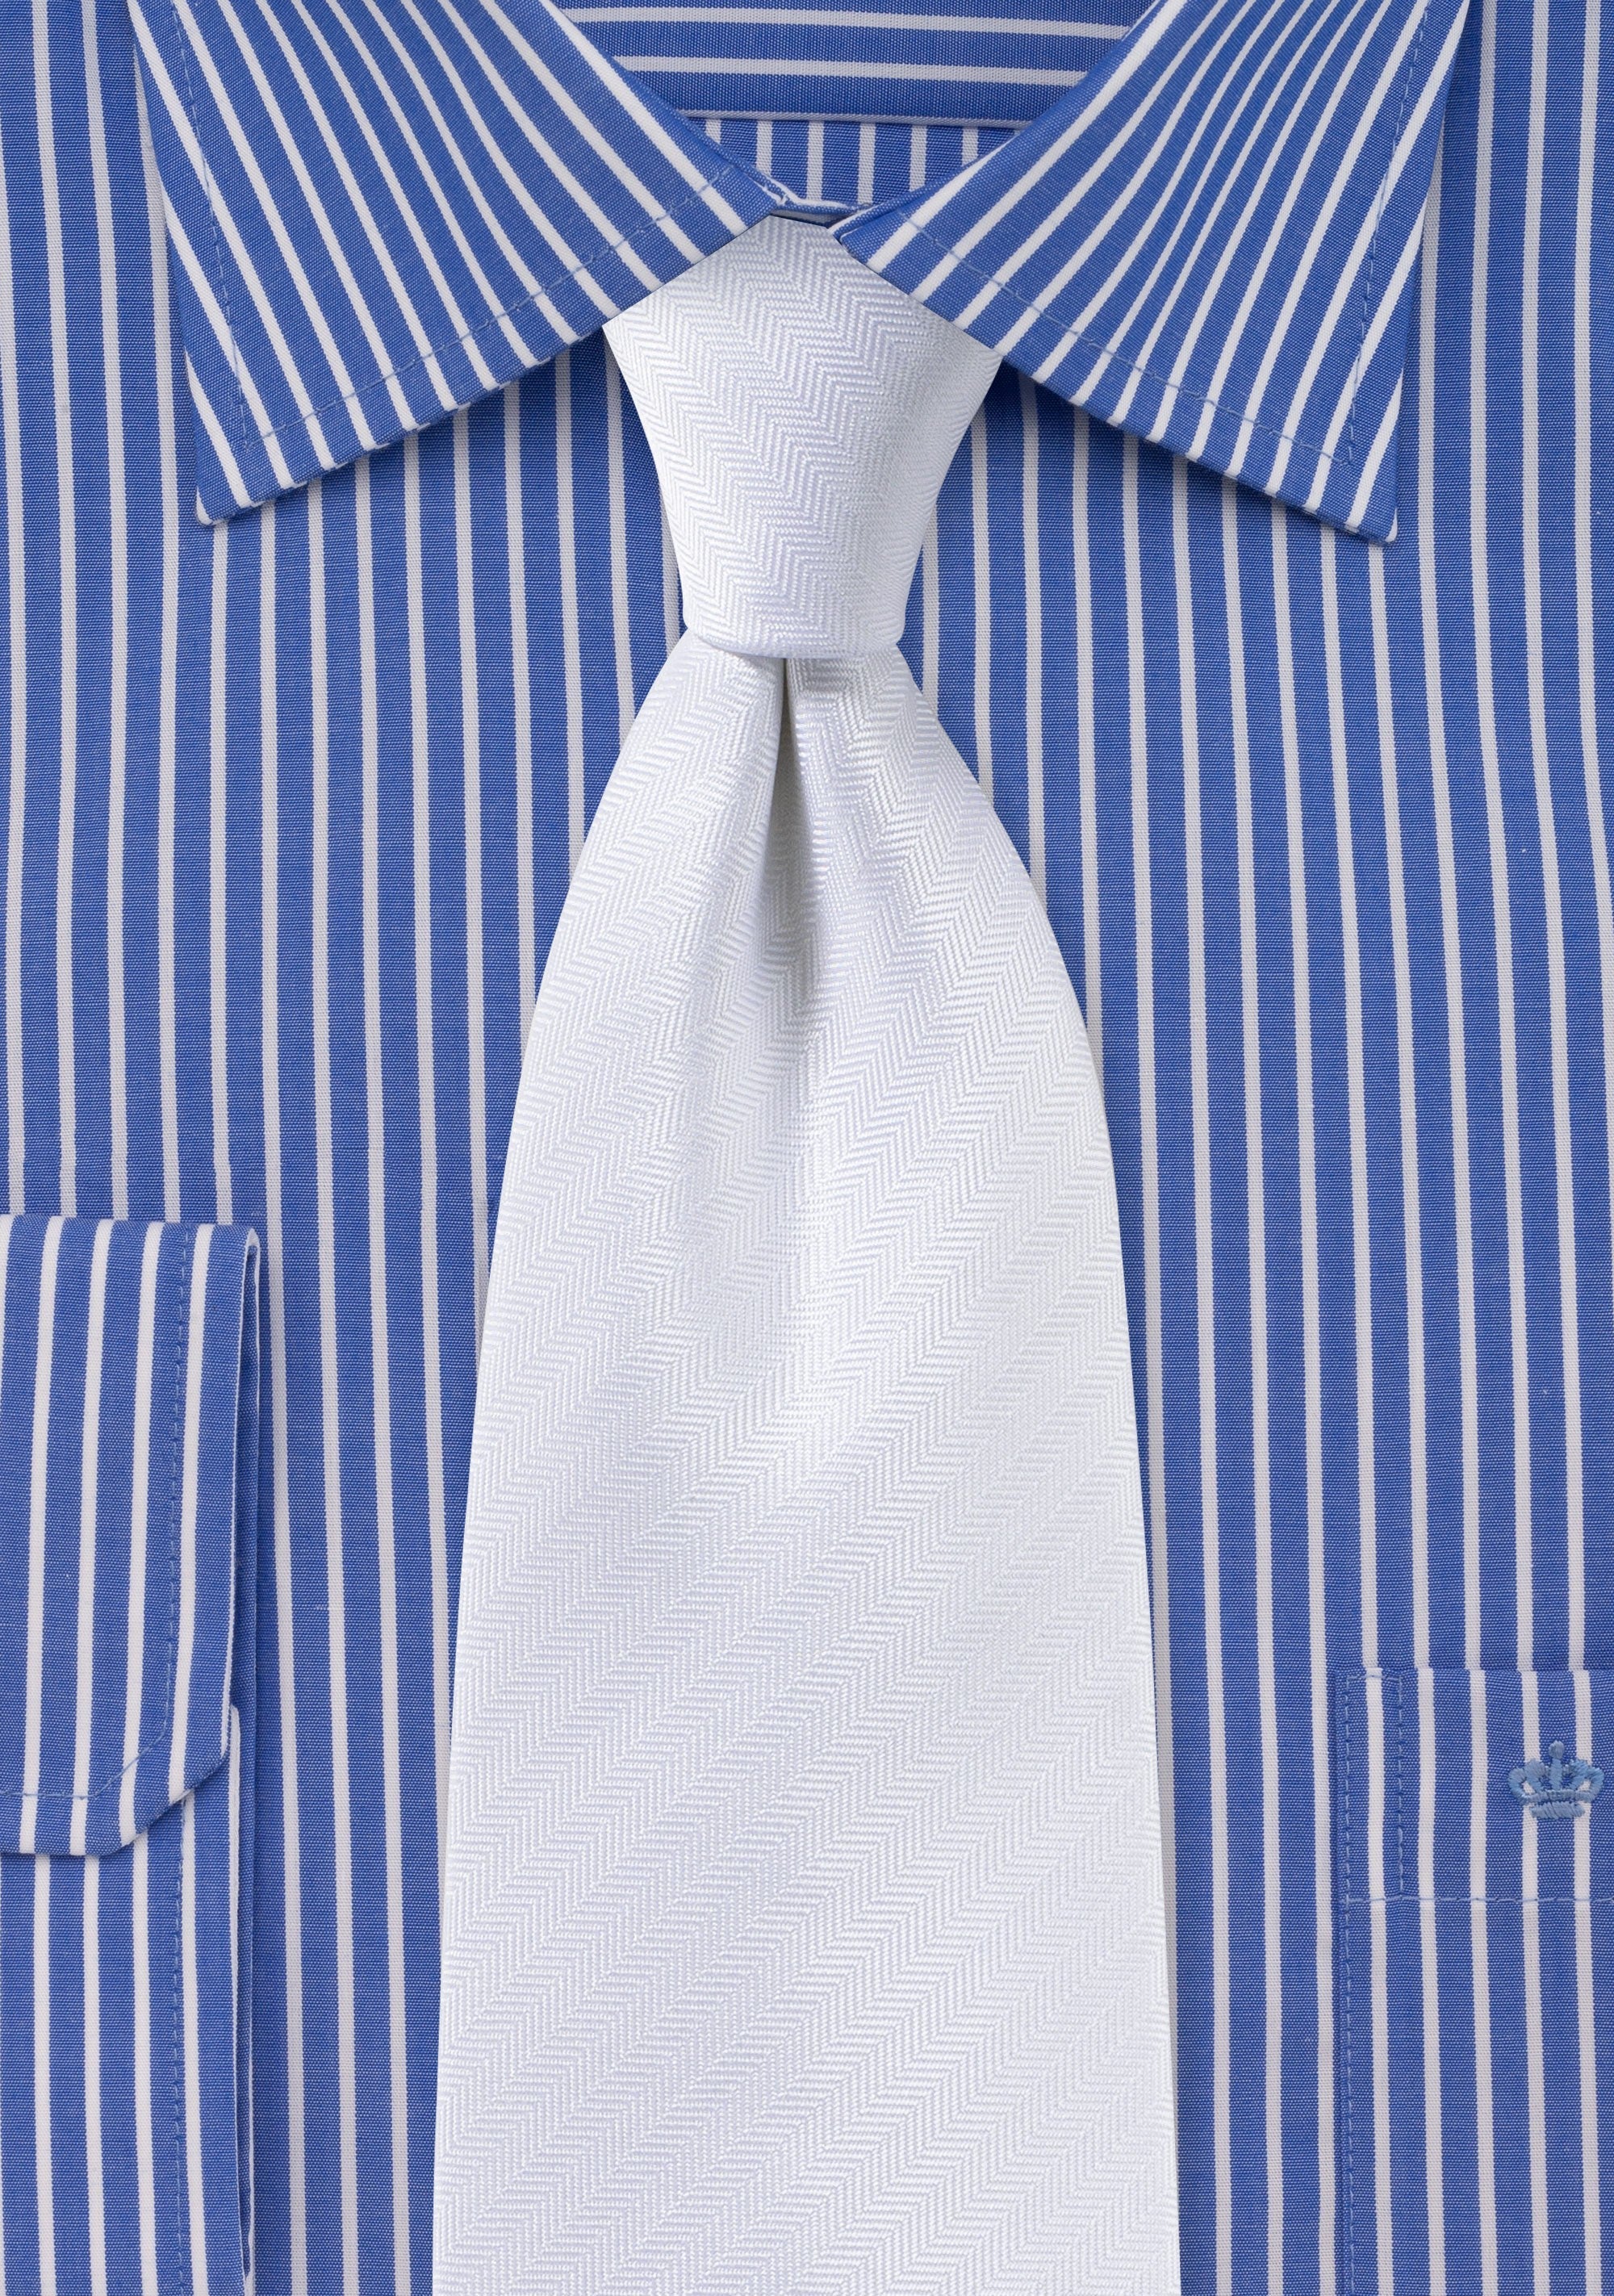 White Herringbone Necktie